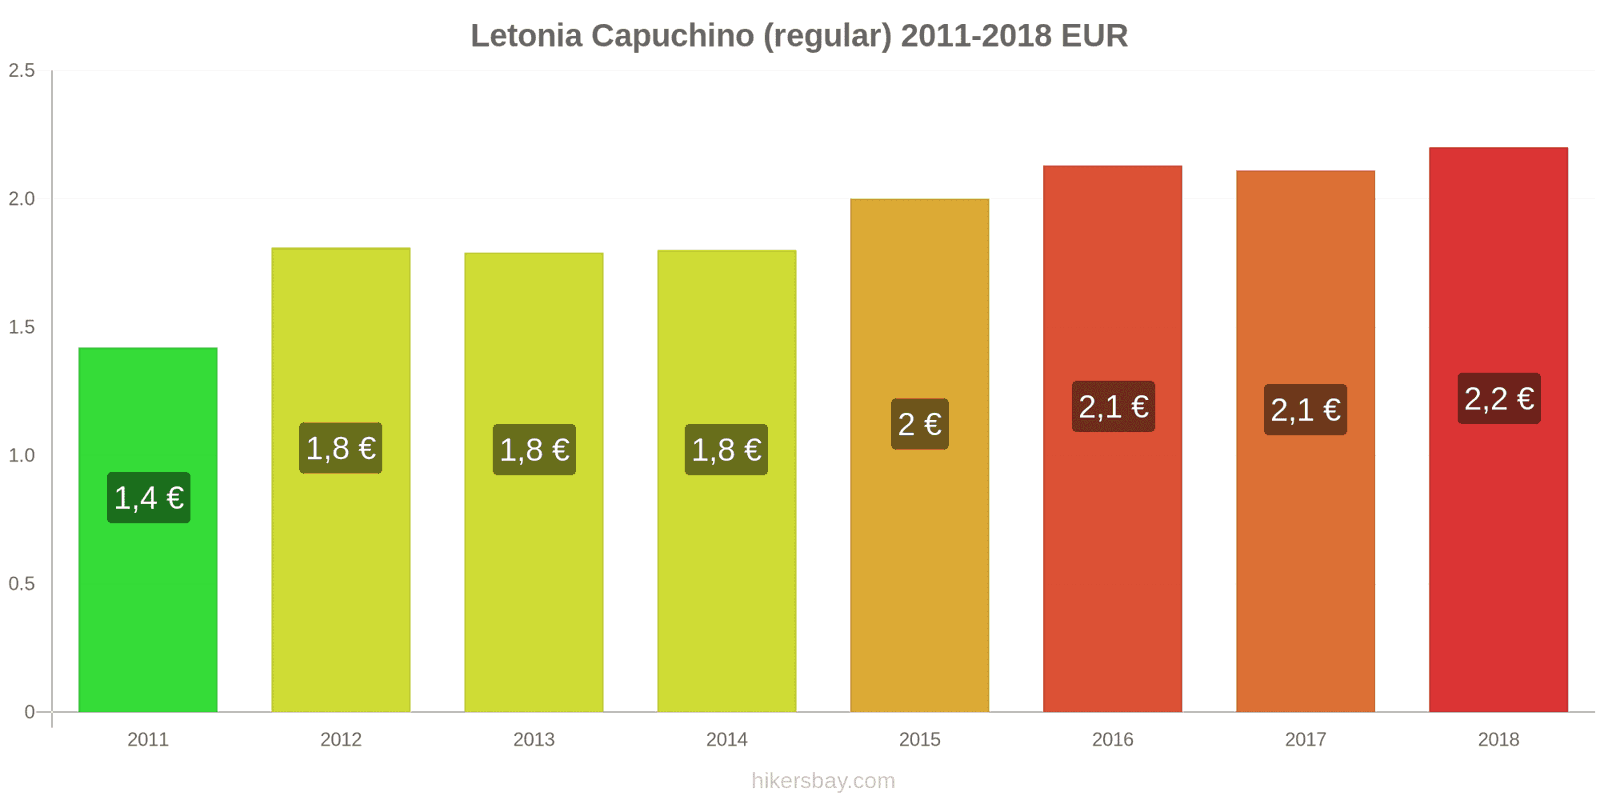 Letonia cambios de precios Cappuccino hikersbay.com